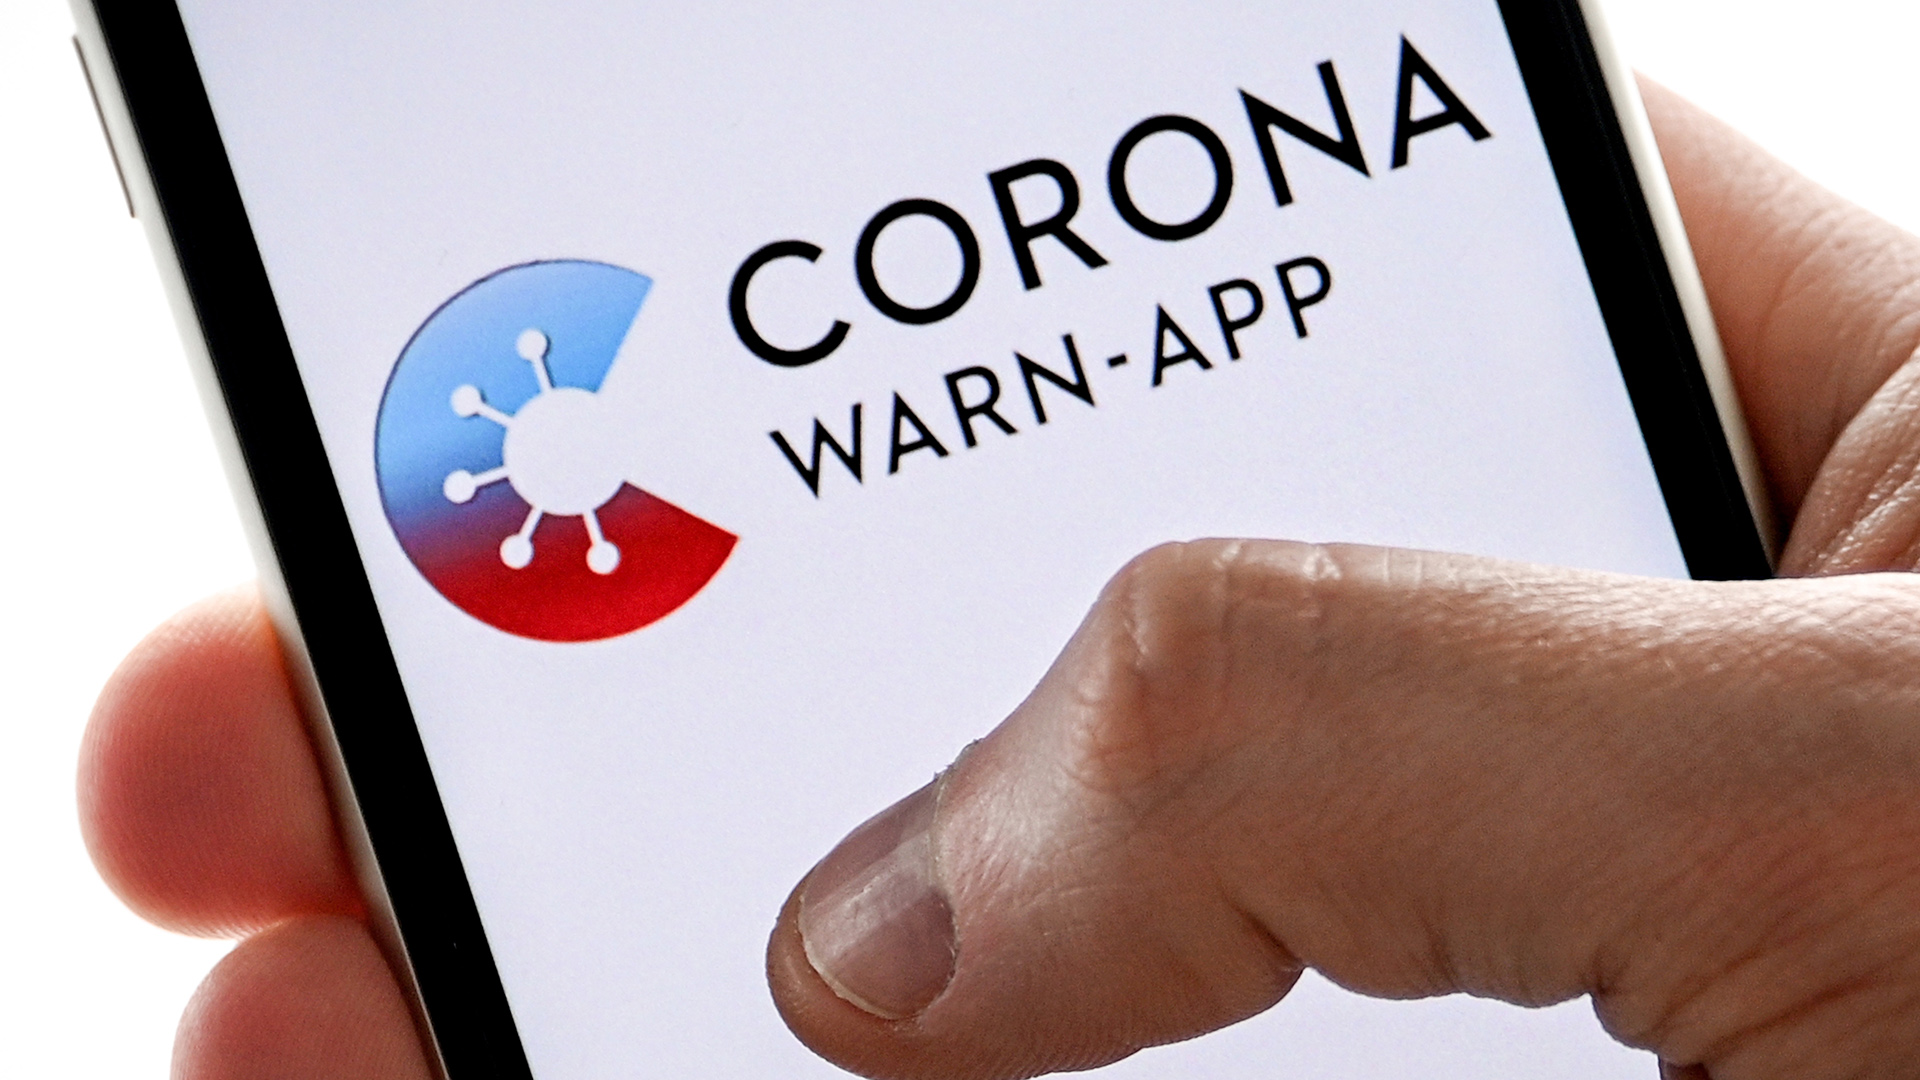 Auf einen Handydisplay ist der Schriftzug "Corona-App" zu sehen | SASCHA STEINBACH/EPA-EFE/Shutter